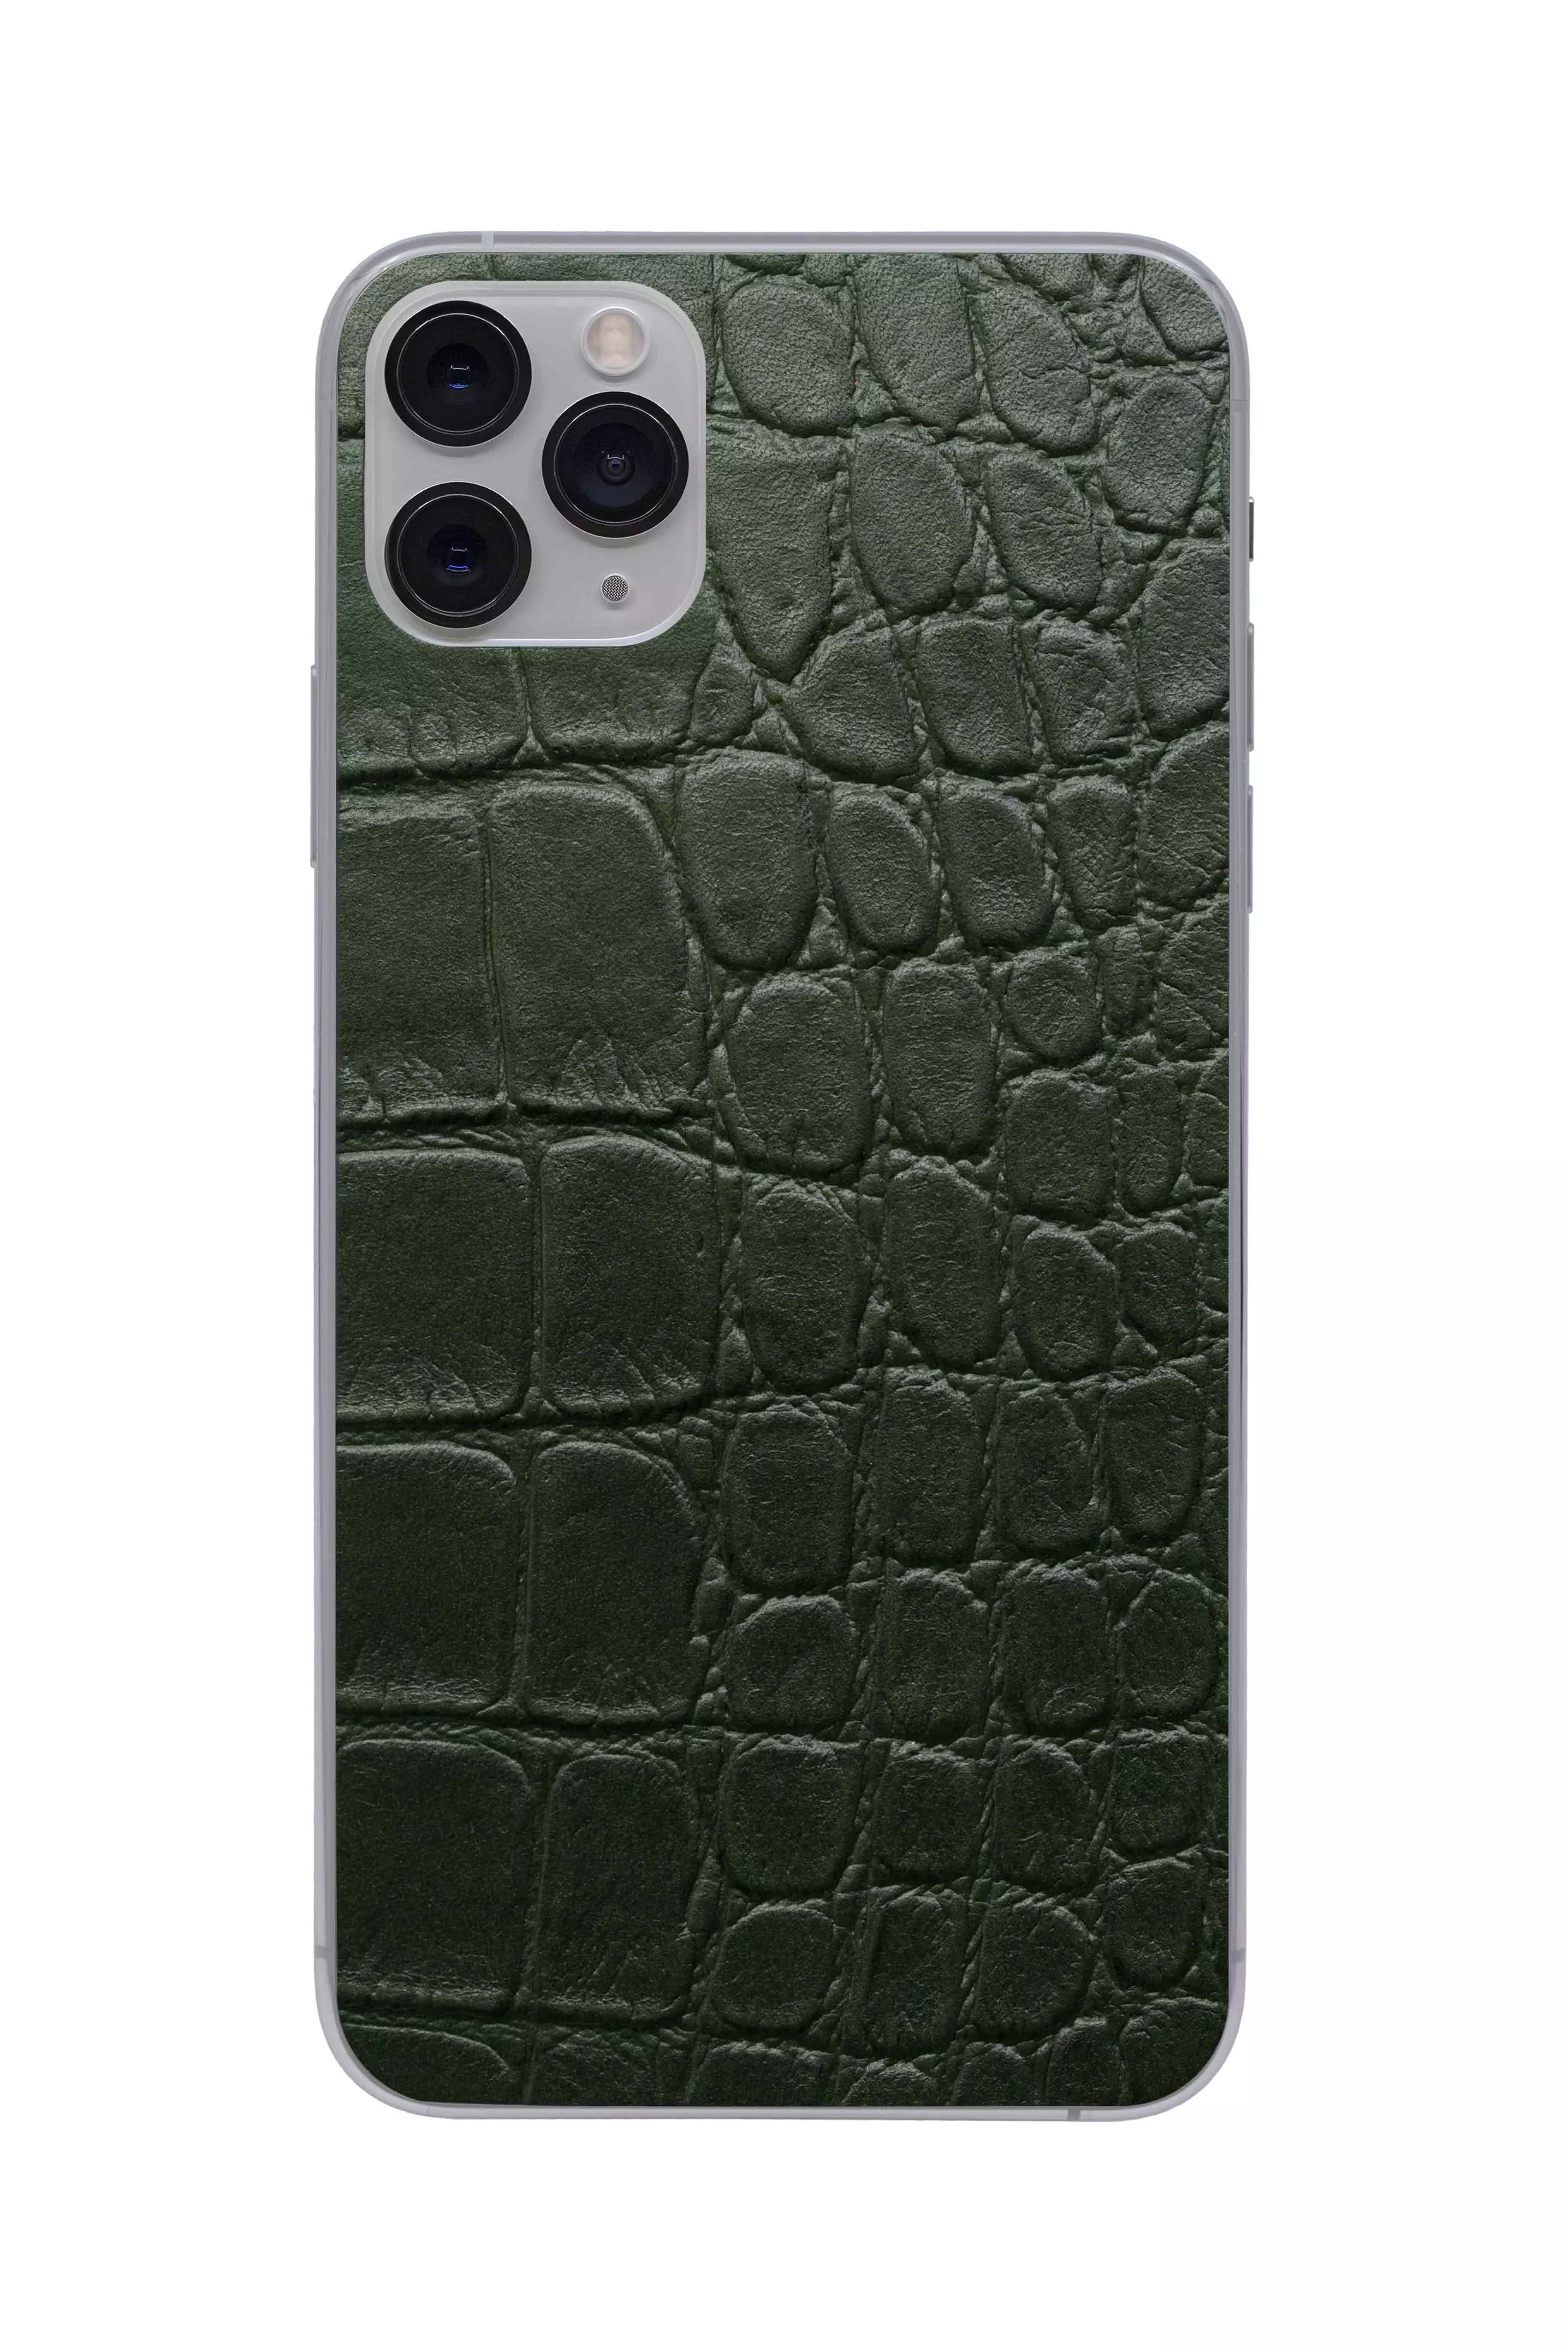 Защитная наклейка из натуральной кожи для iPhone 11 Pro Max, Вид Зеленый 2. Вид 1